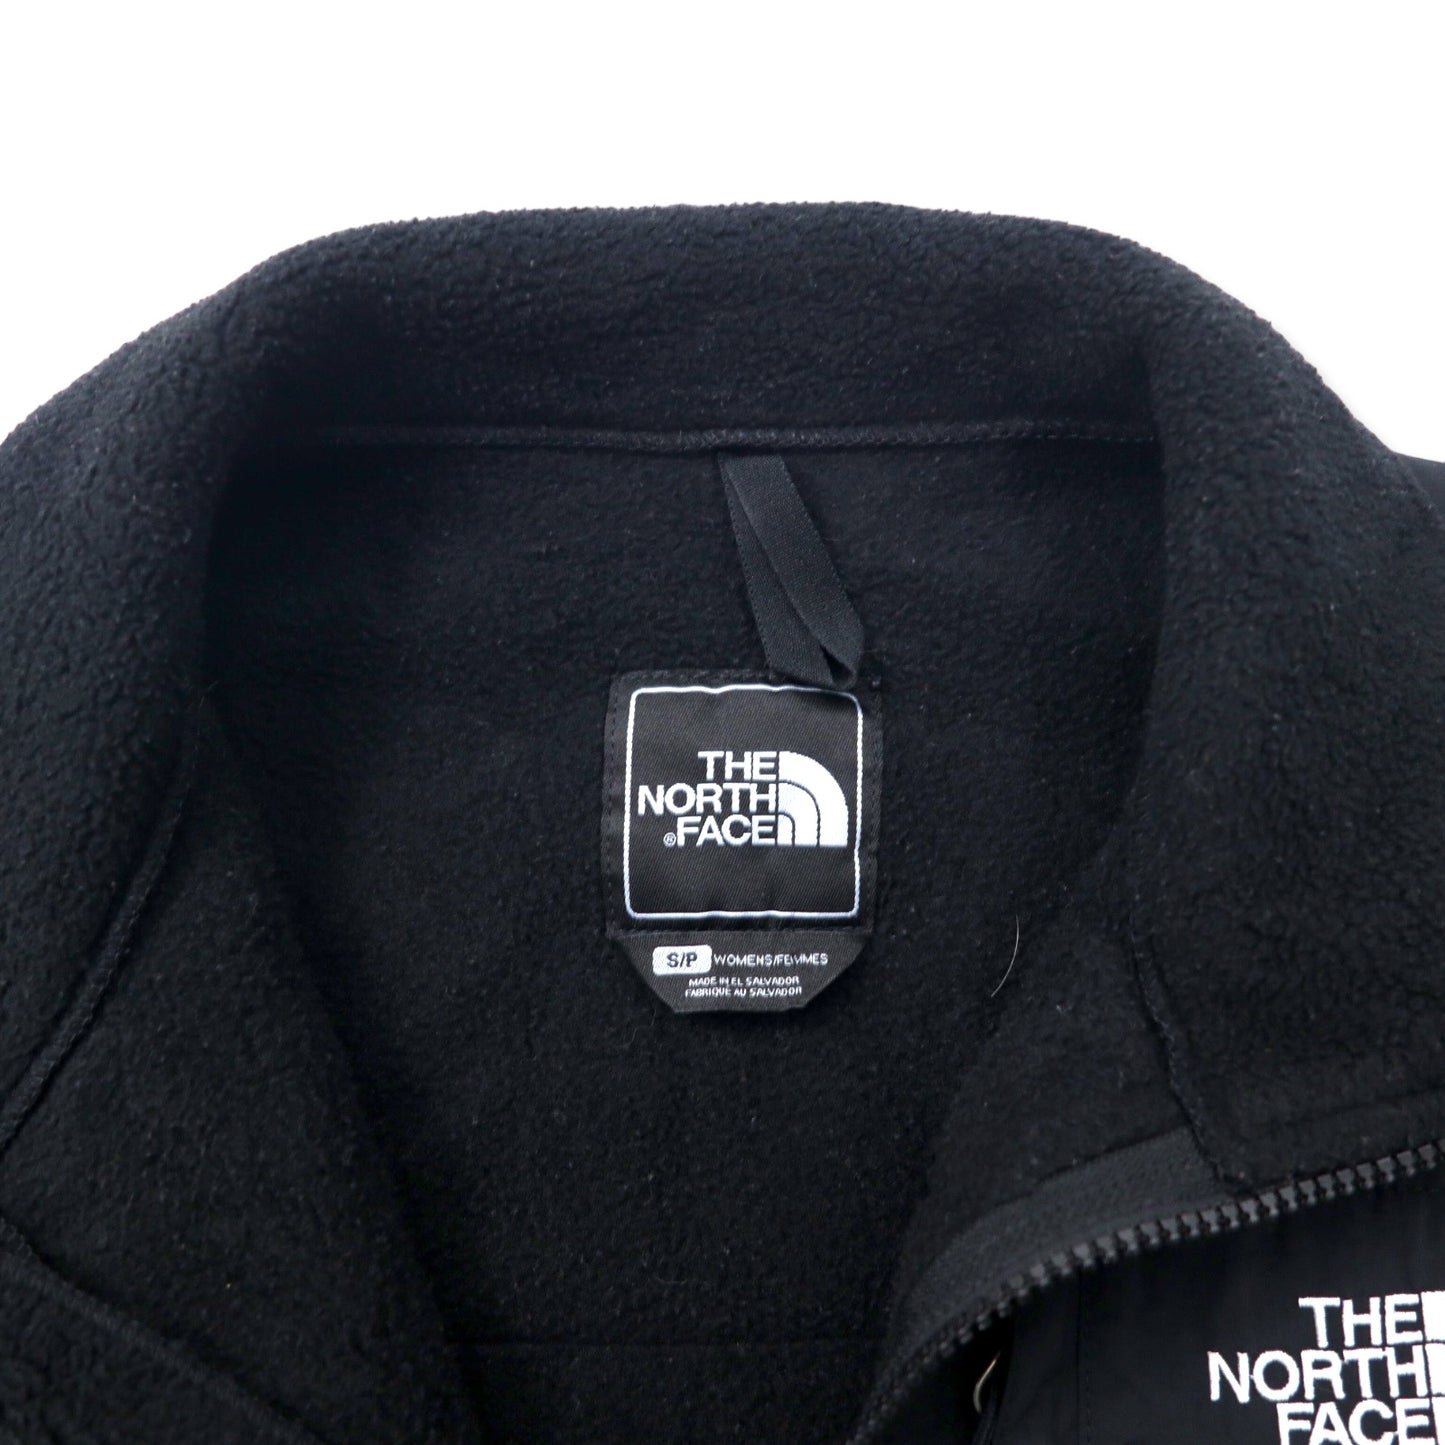 THE NORTH FACE デナリジャケット POLARTEC フリース S ブラック ポリエステル ワンポイントロゴ刺繍